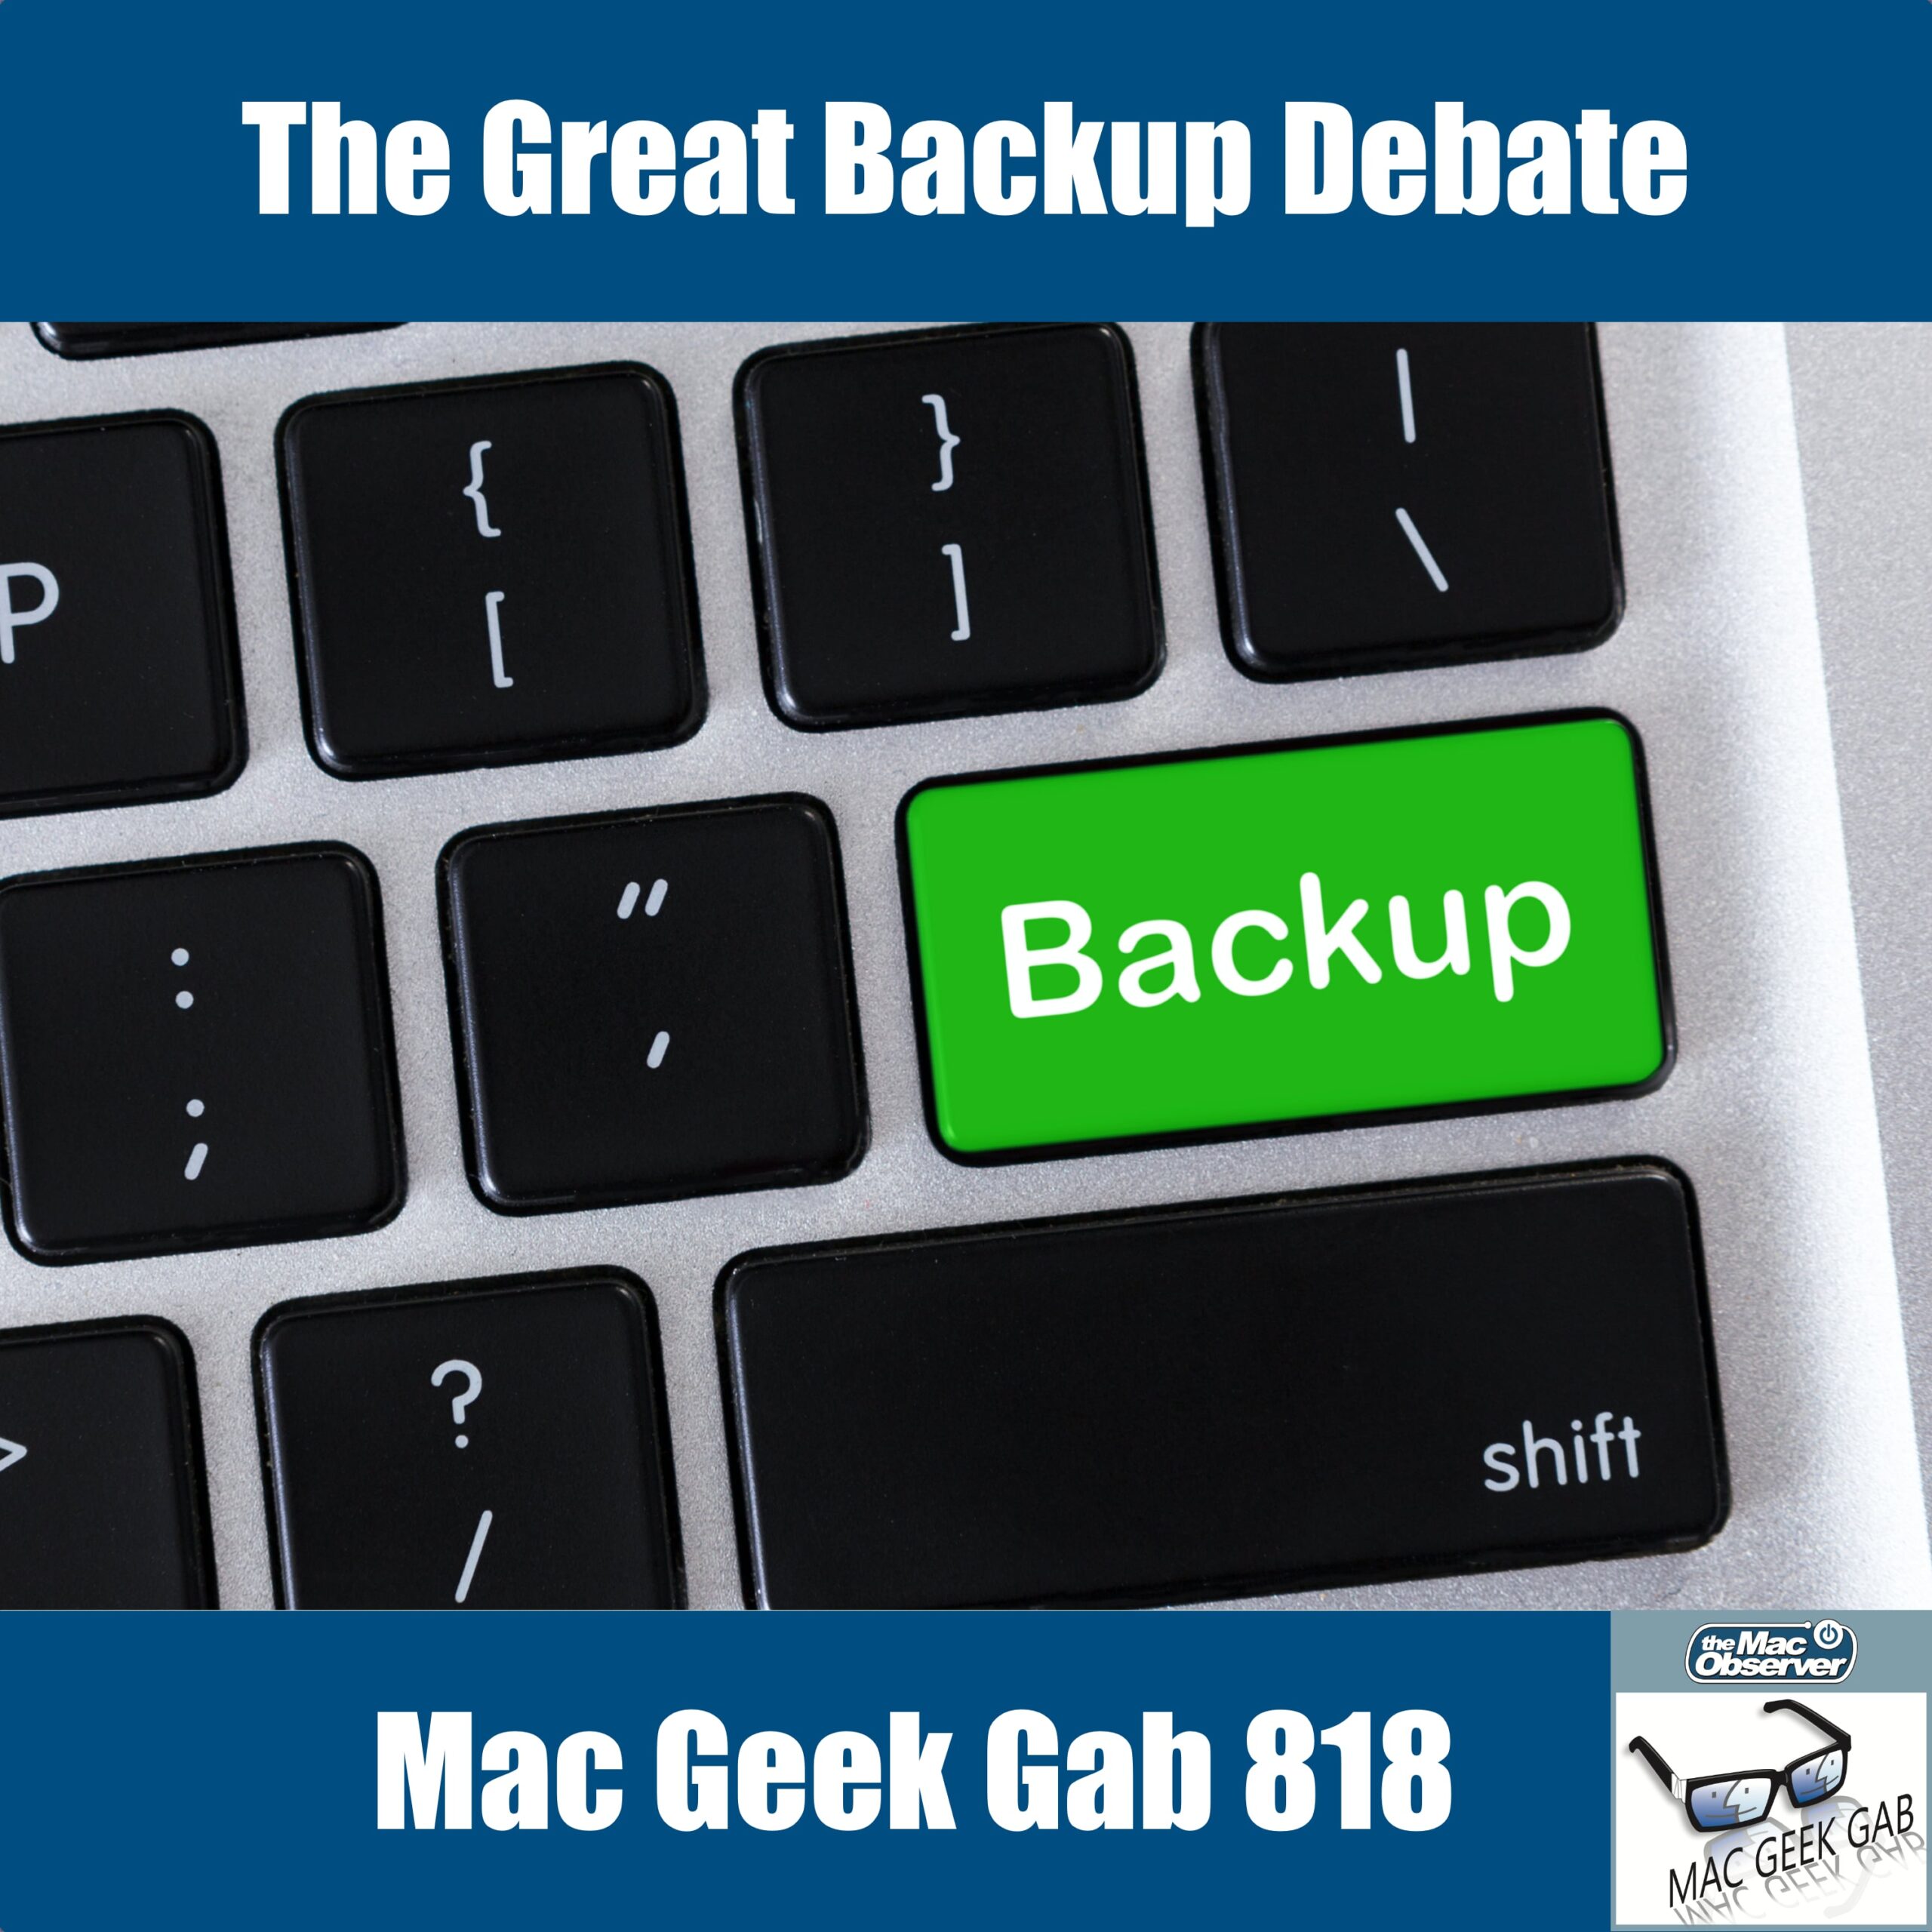 El gran debate sobre las copias de seguridad - Mac Geek Gab 818